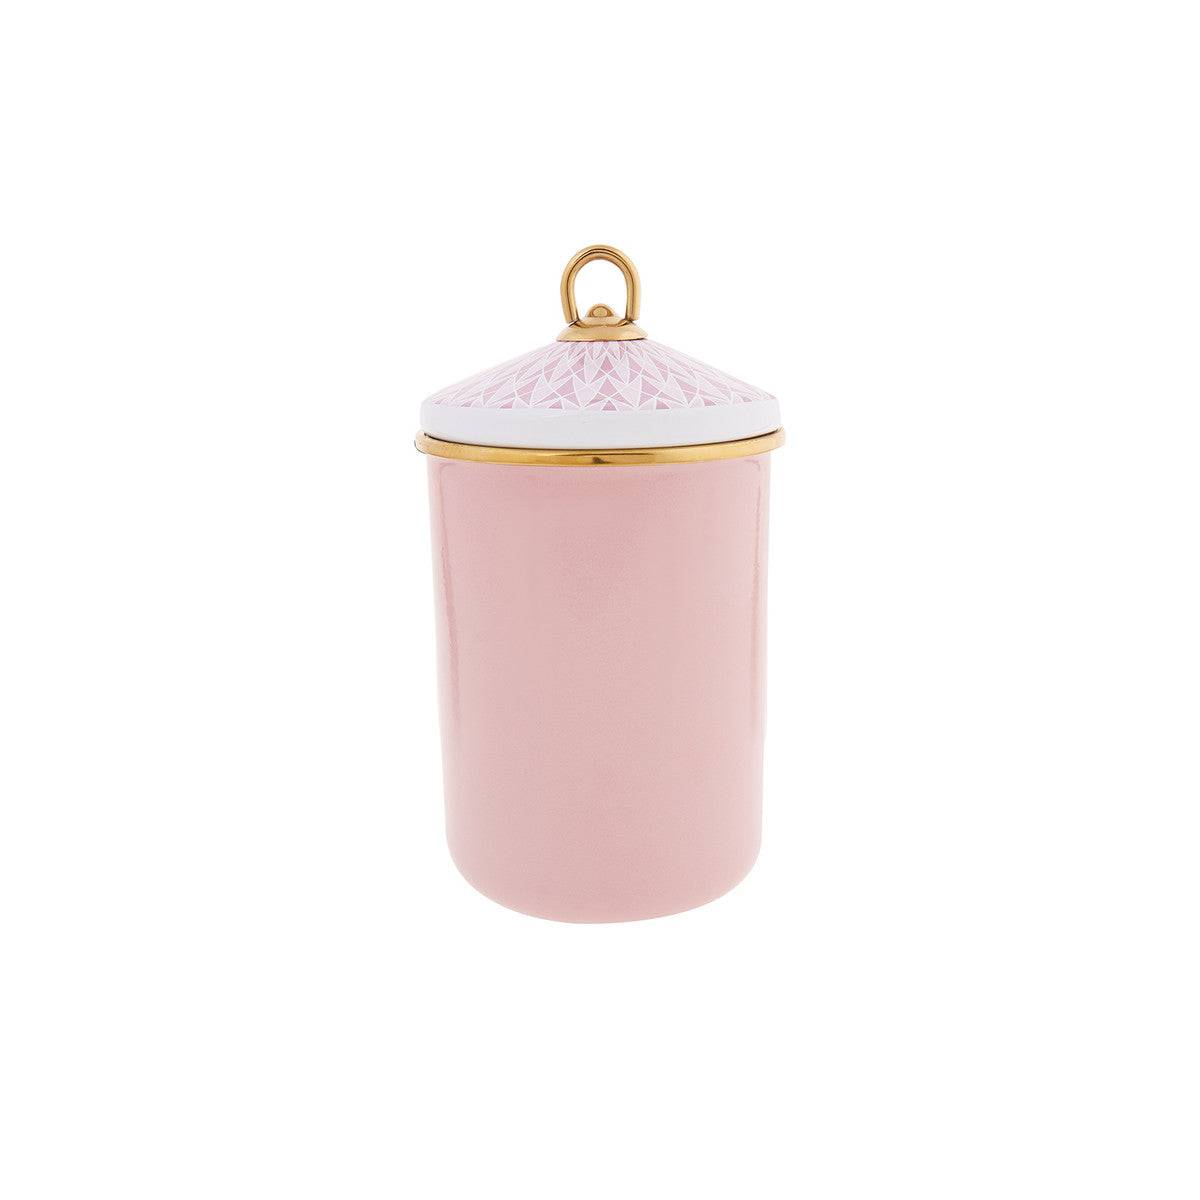 Karaca Retro Pink Storage Container Medium 153.03.06.5028 -  Spice Sets | حاوية تخزين كاراجا ريترو وردي متوسط - ebarza Furniture UAE | Shop Modern Furniture in Abu Dhabi & Dubai - مفروشات ايبازرا في الامارات | تسوق اثاث عصري وديكورات مميزة في دبي وابوظبي